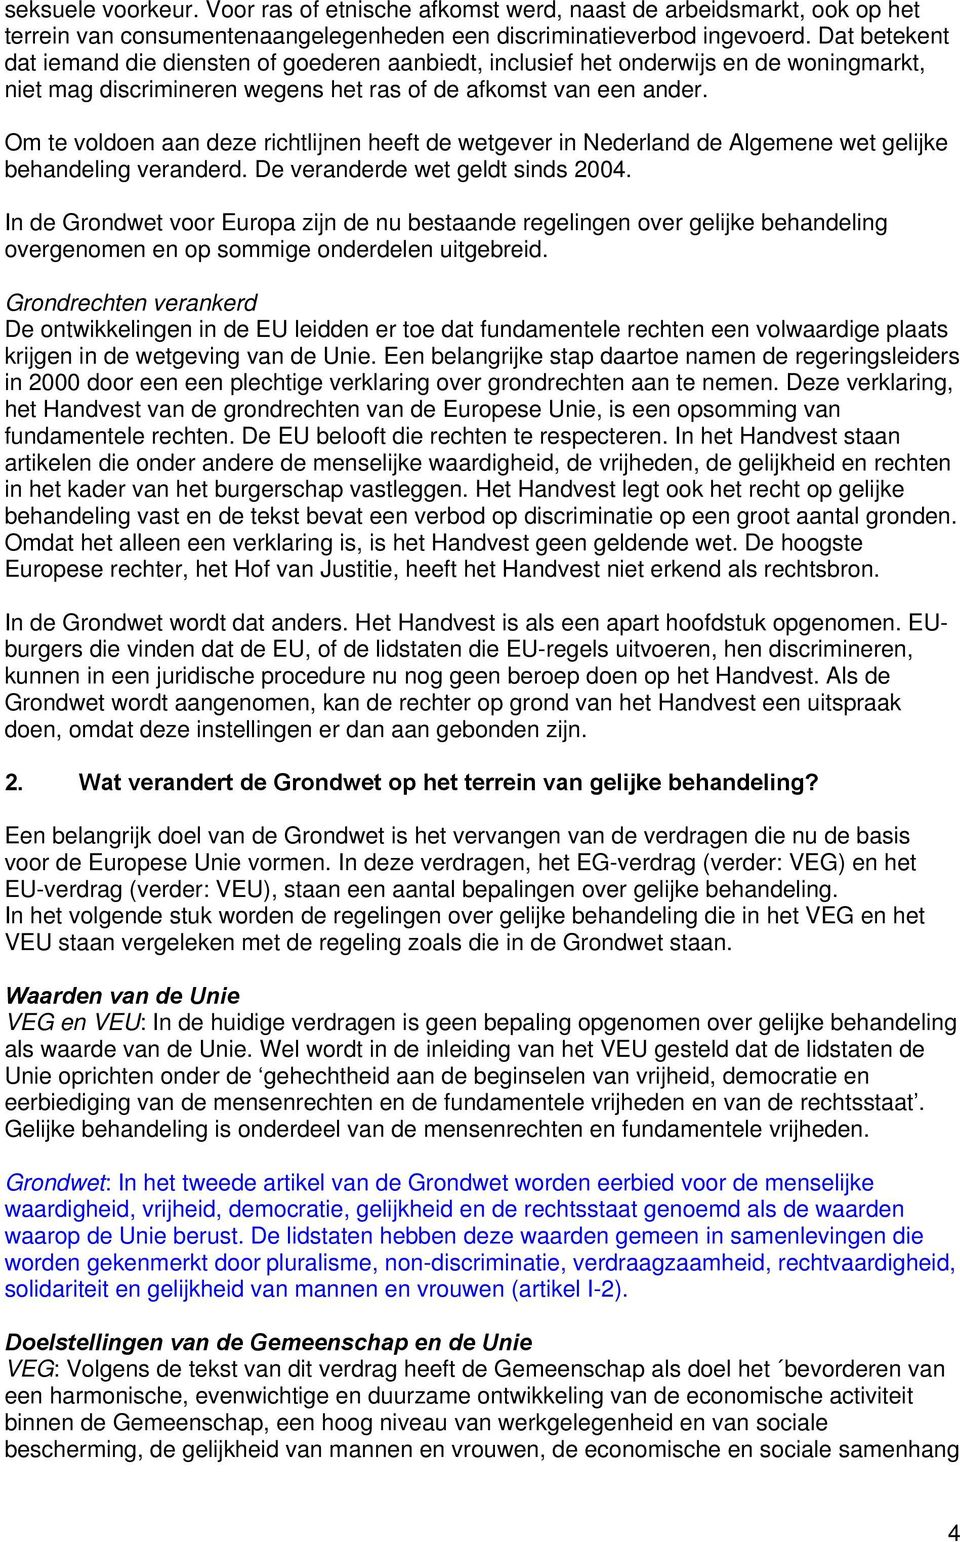 Om te voldoen aan deze richtlijnen heeft de wetgever in Nederland de Algemene wet gelijke behandeling veranderd. De veranderde wet geldt sinds 2004.